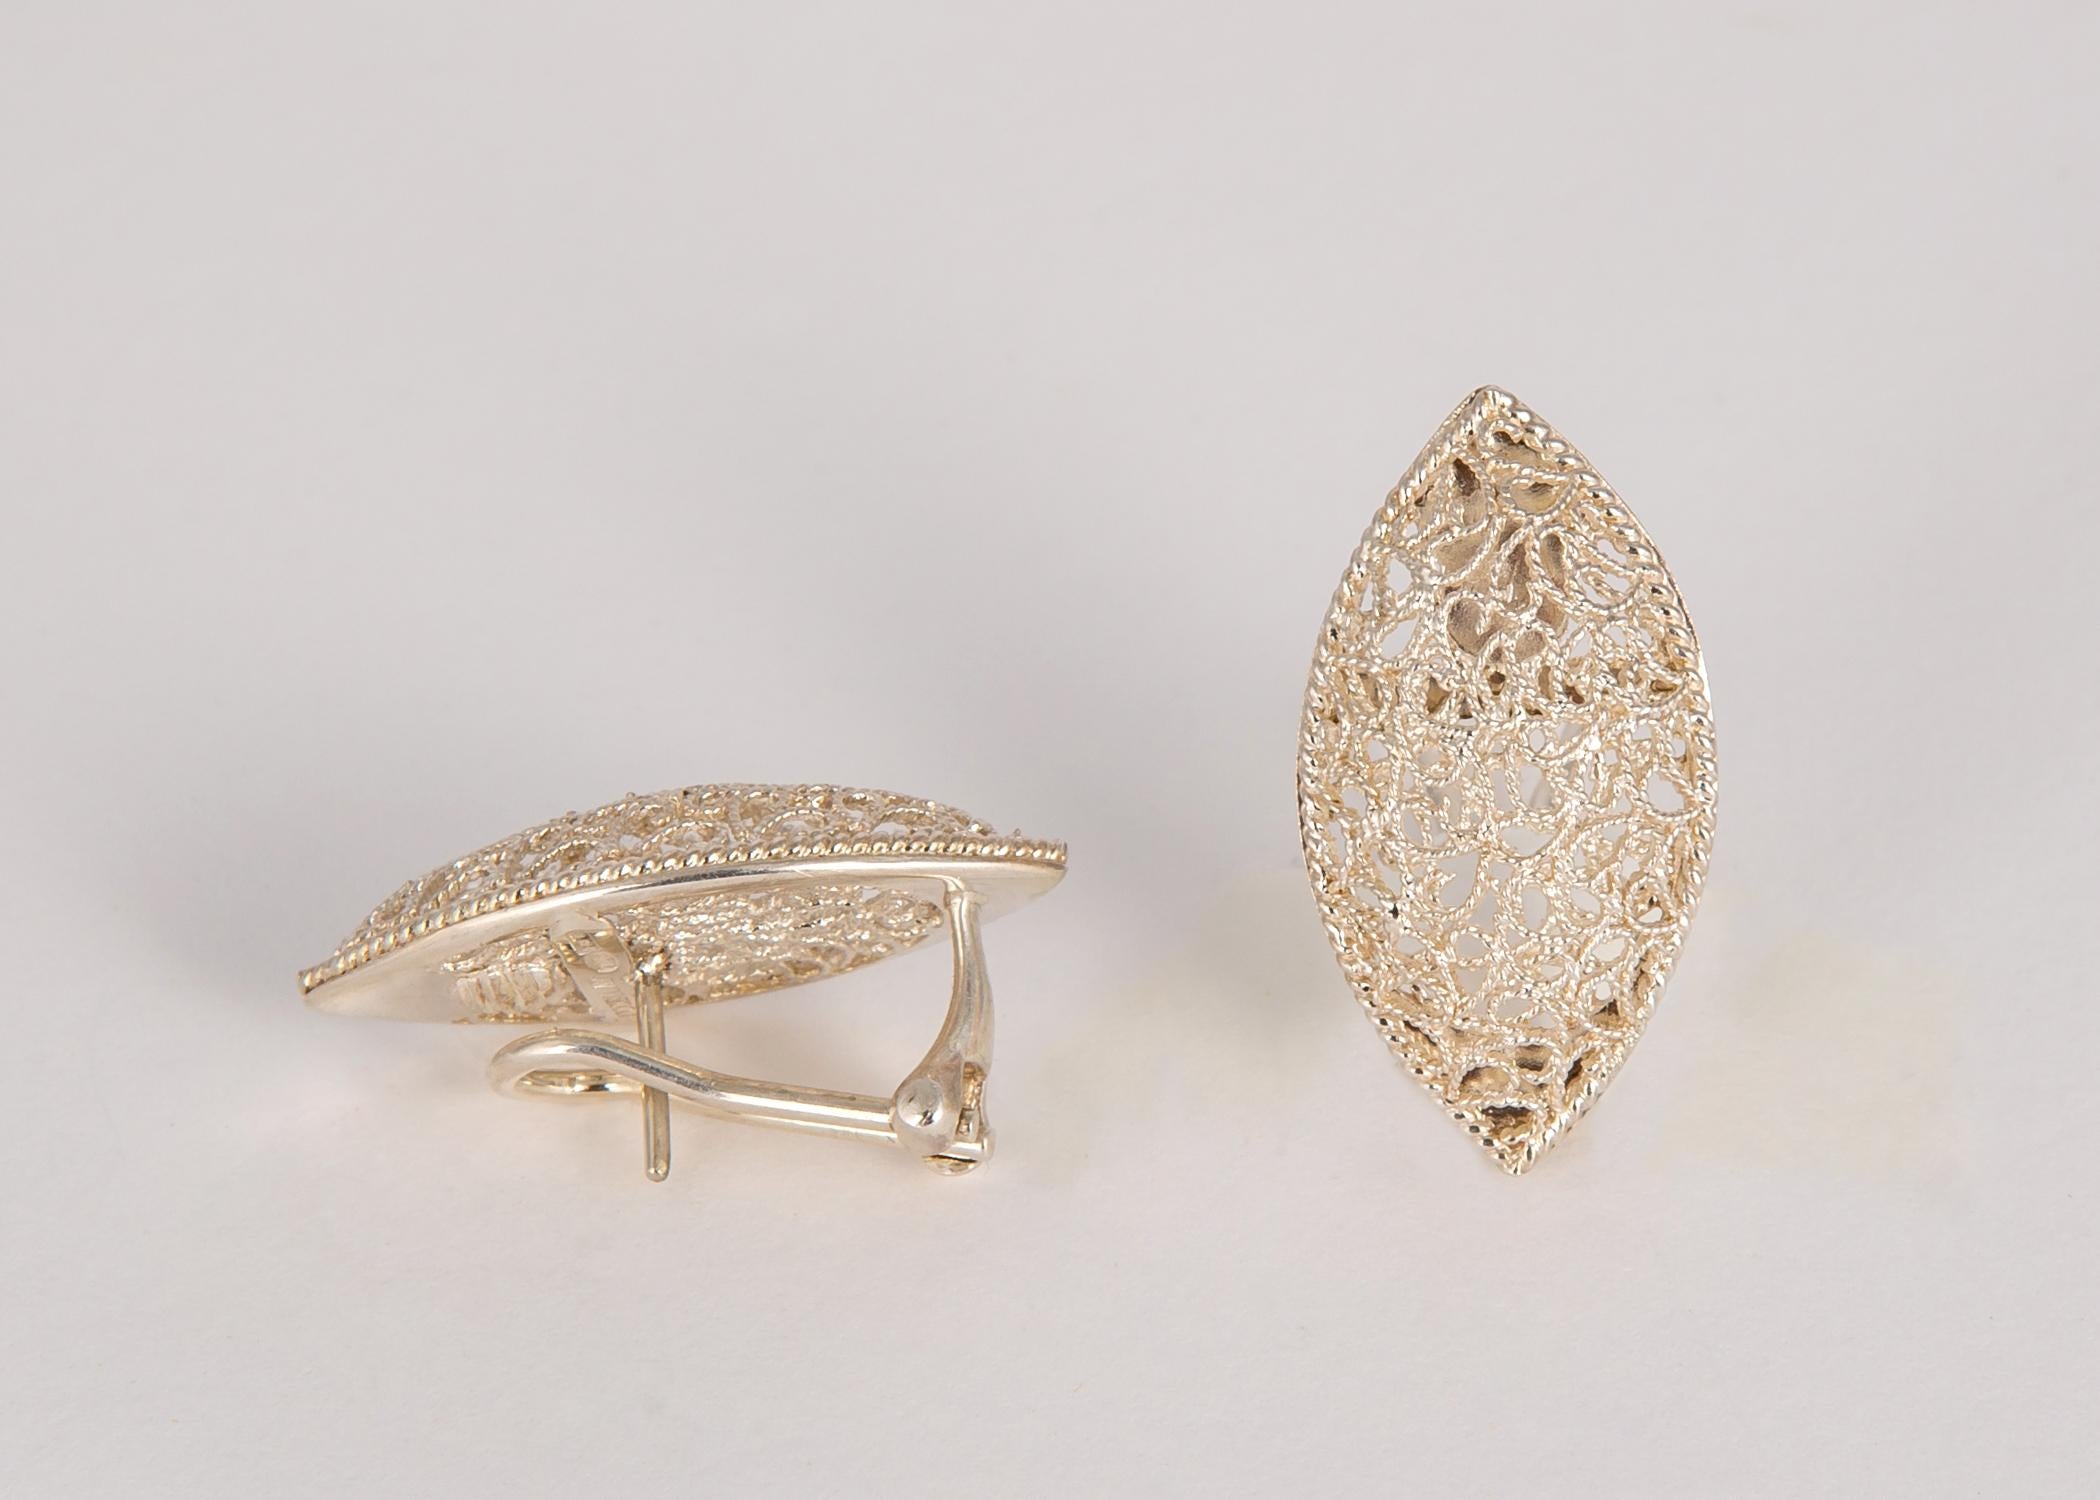 Contemporary Buccellati Silver Filidoro Earrings